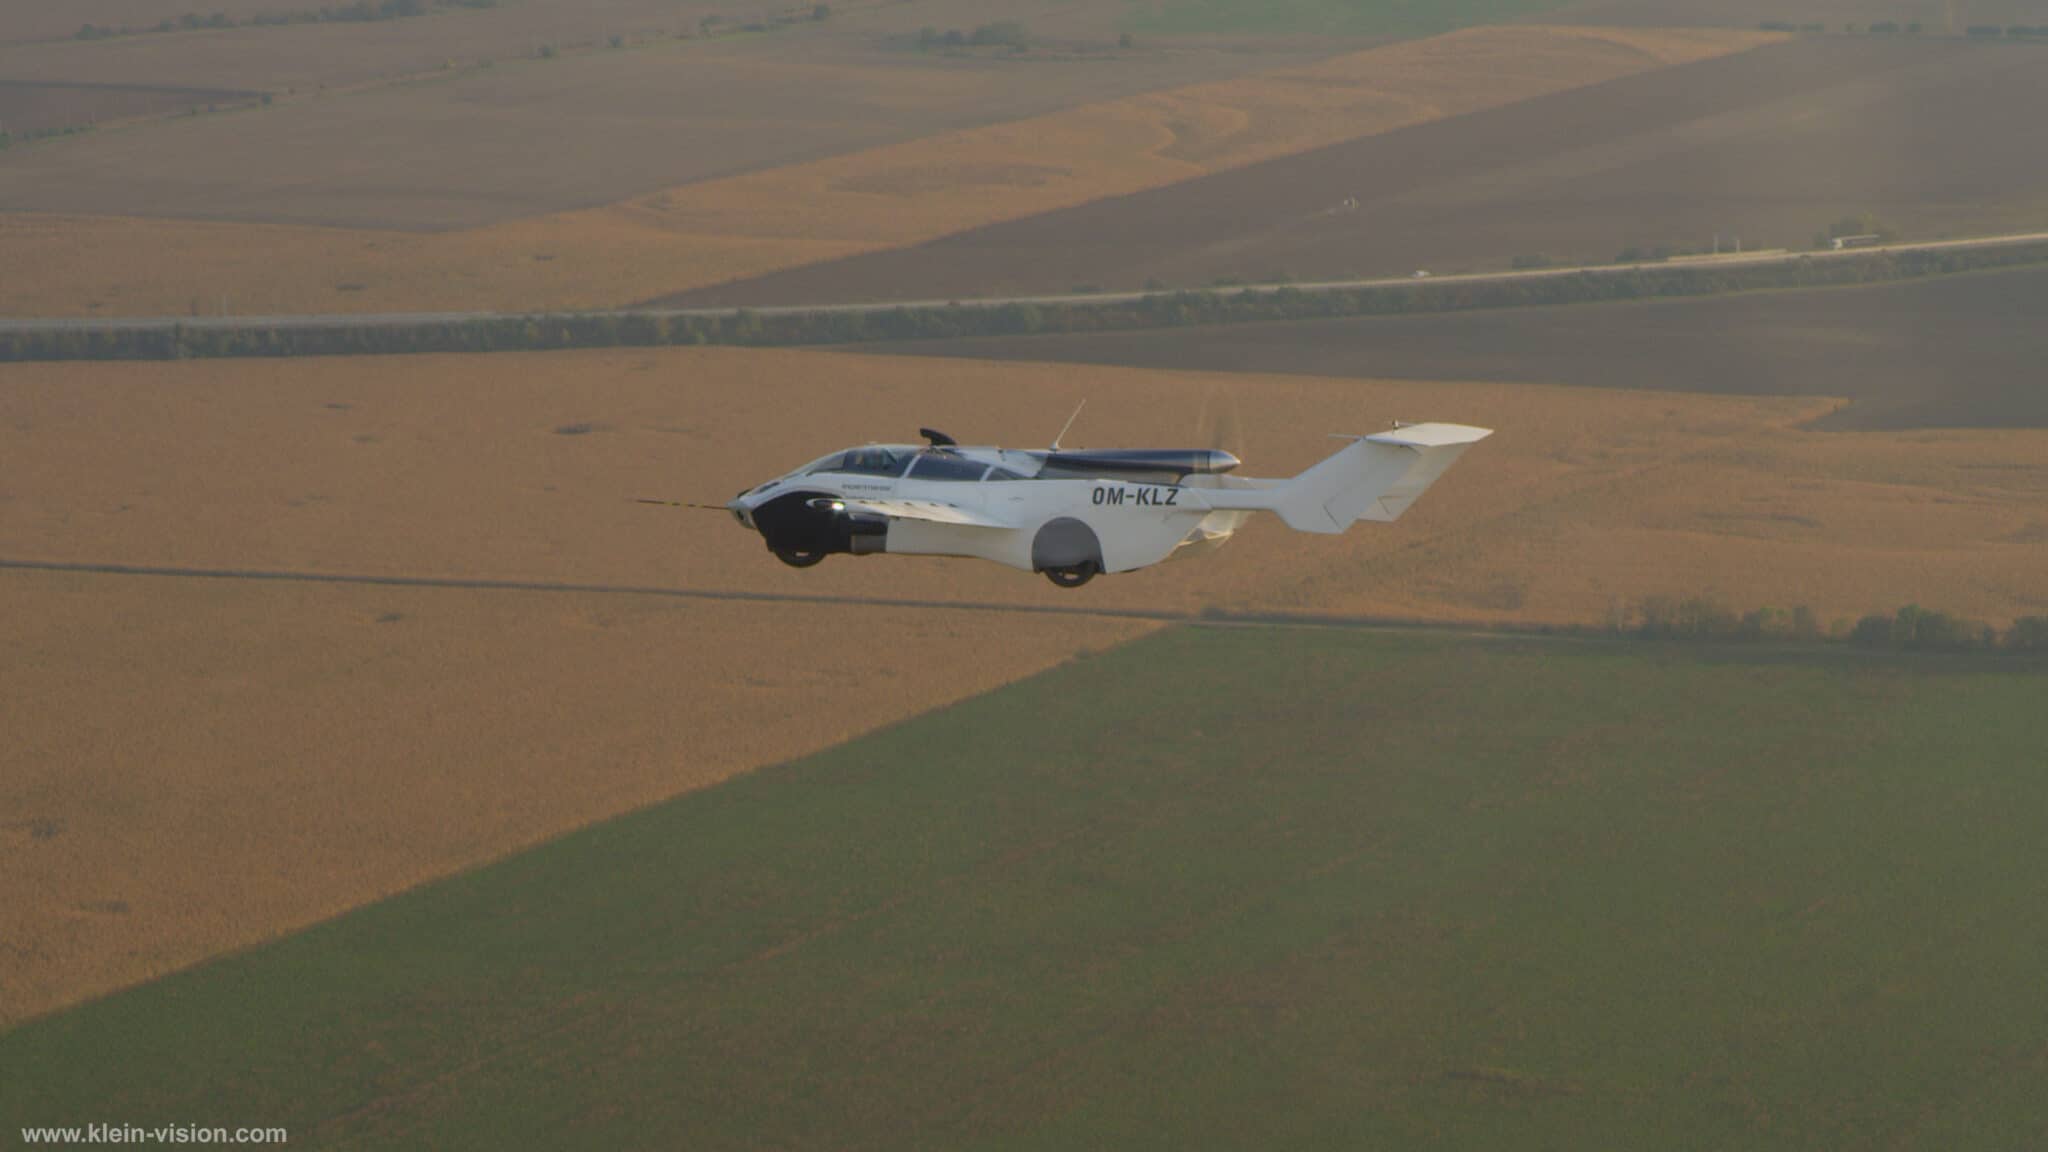 La AirCar in volo - Crediti foto: ufficio stampa Klein Vision